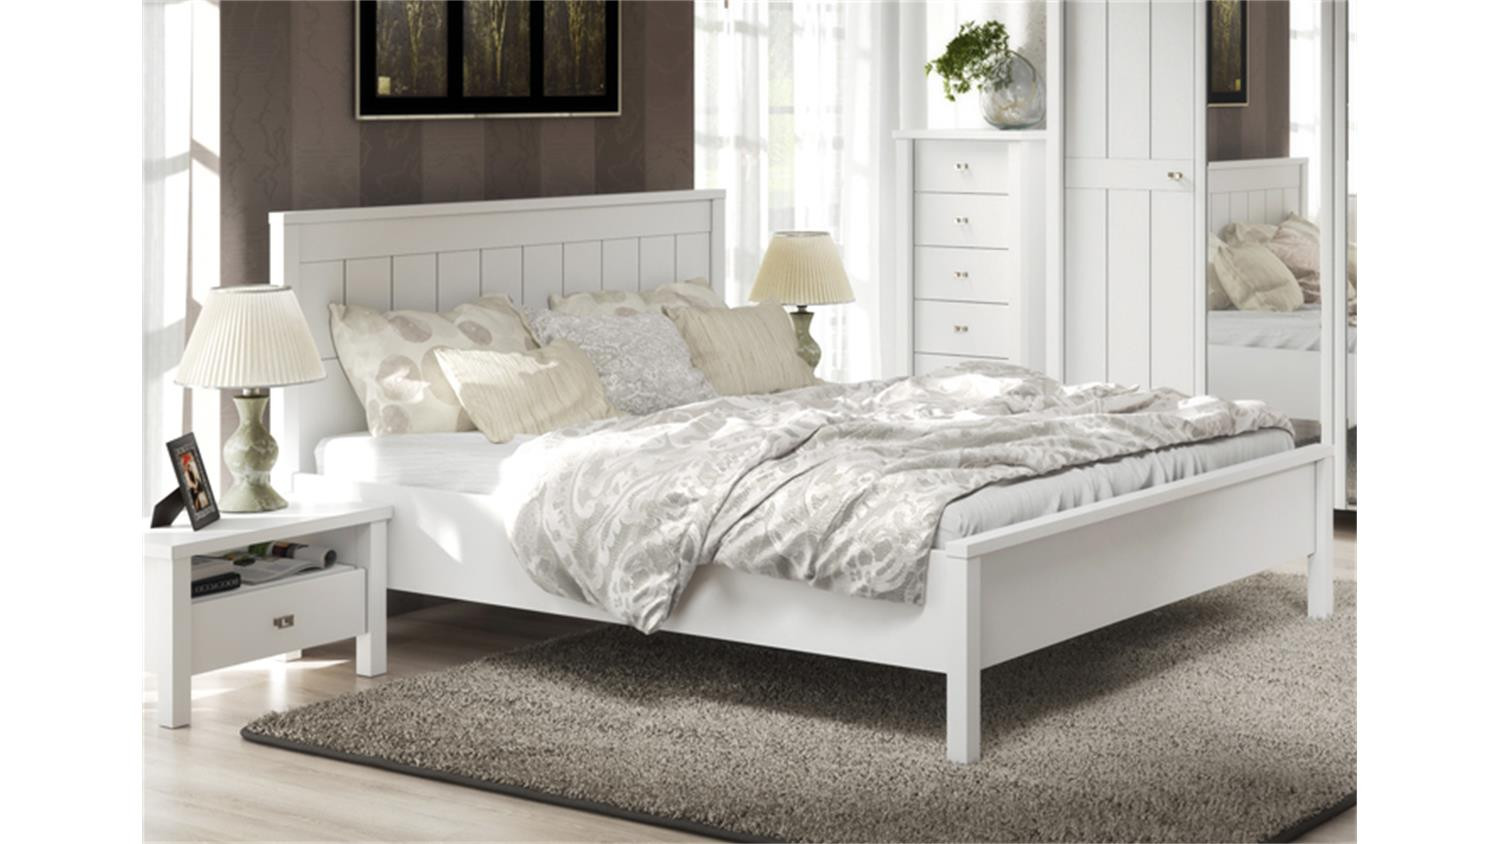 Bett 180x200
 Bett BRIGHTON in weiß super matt Landhaus Style 180x200